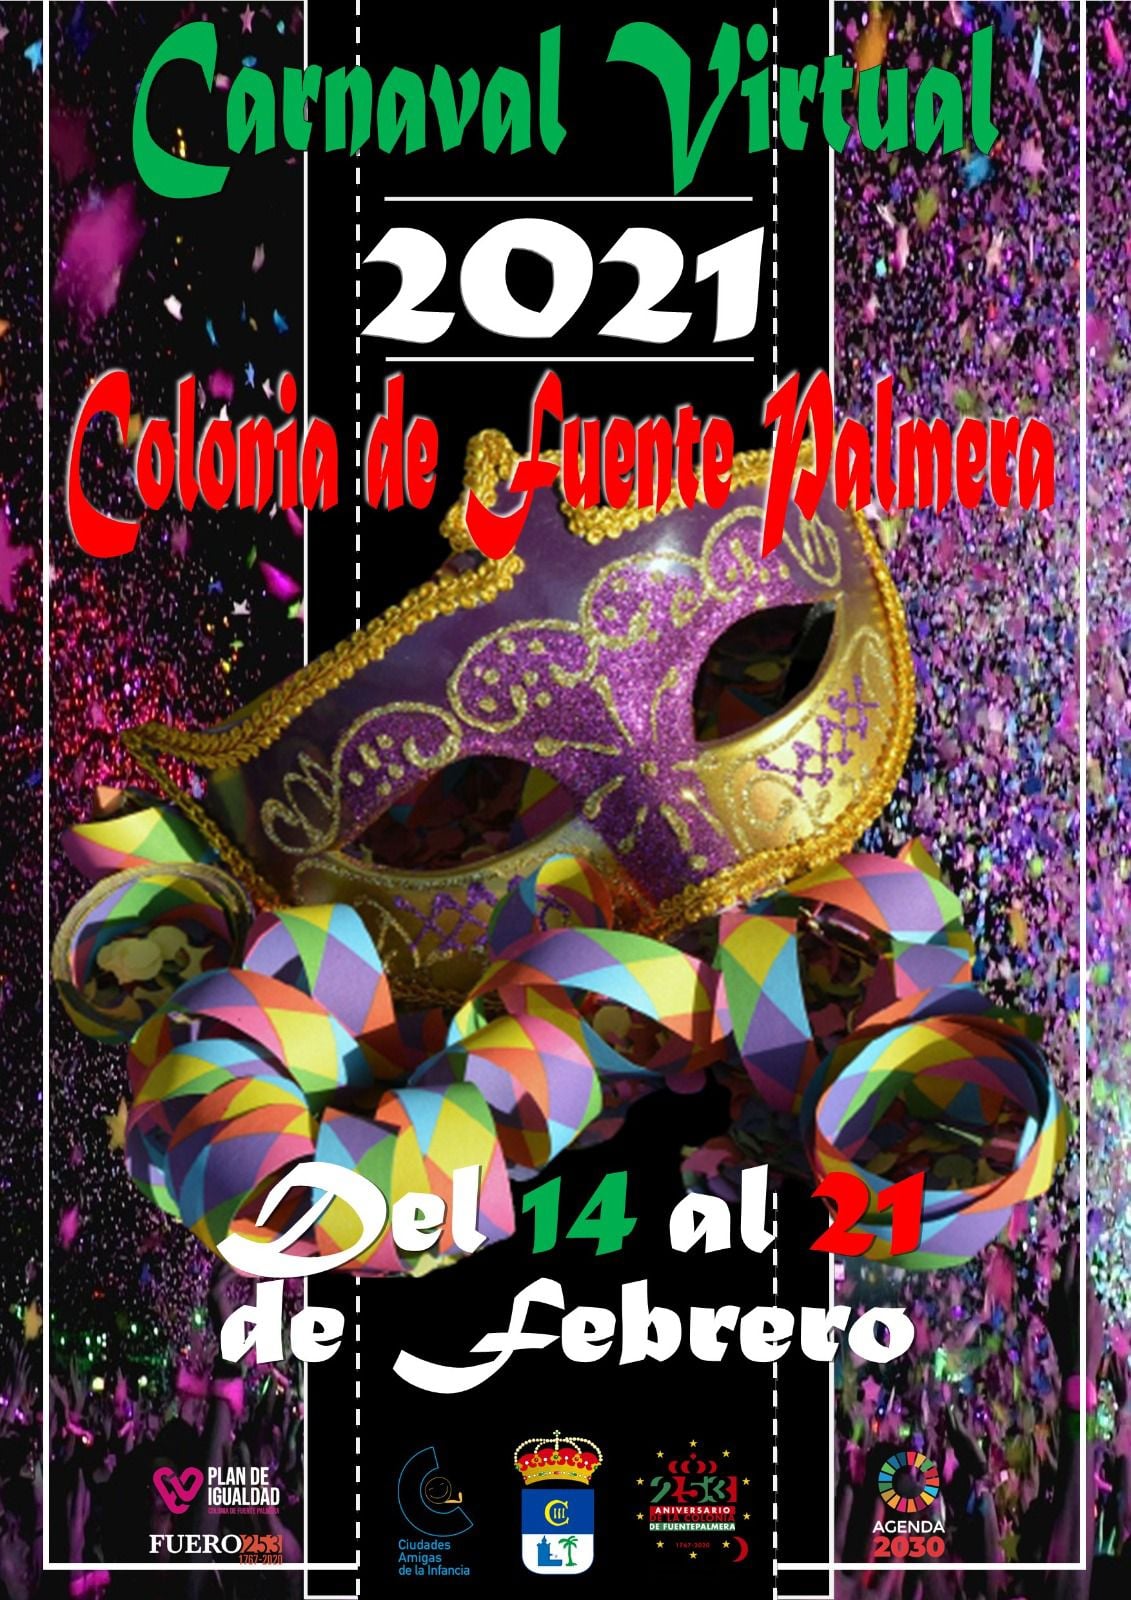 Carnaval virtual 2021 Fuente Palmera